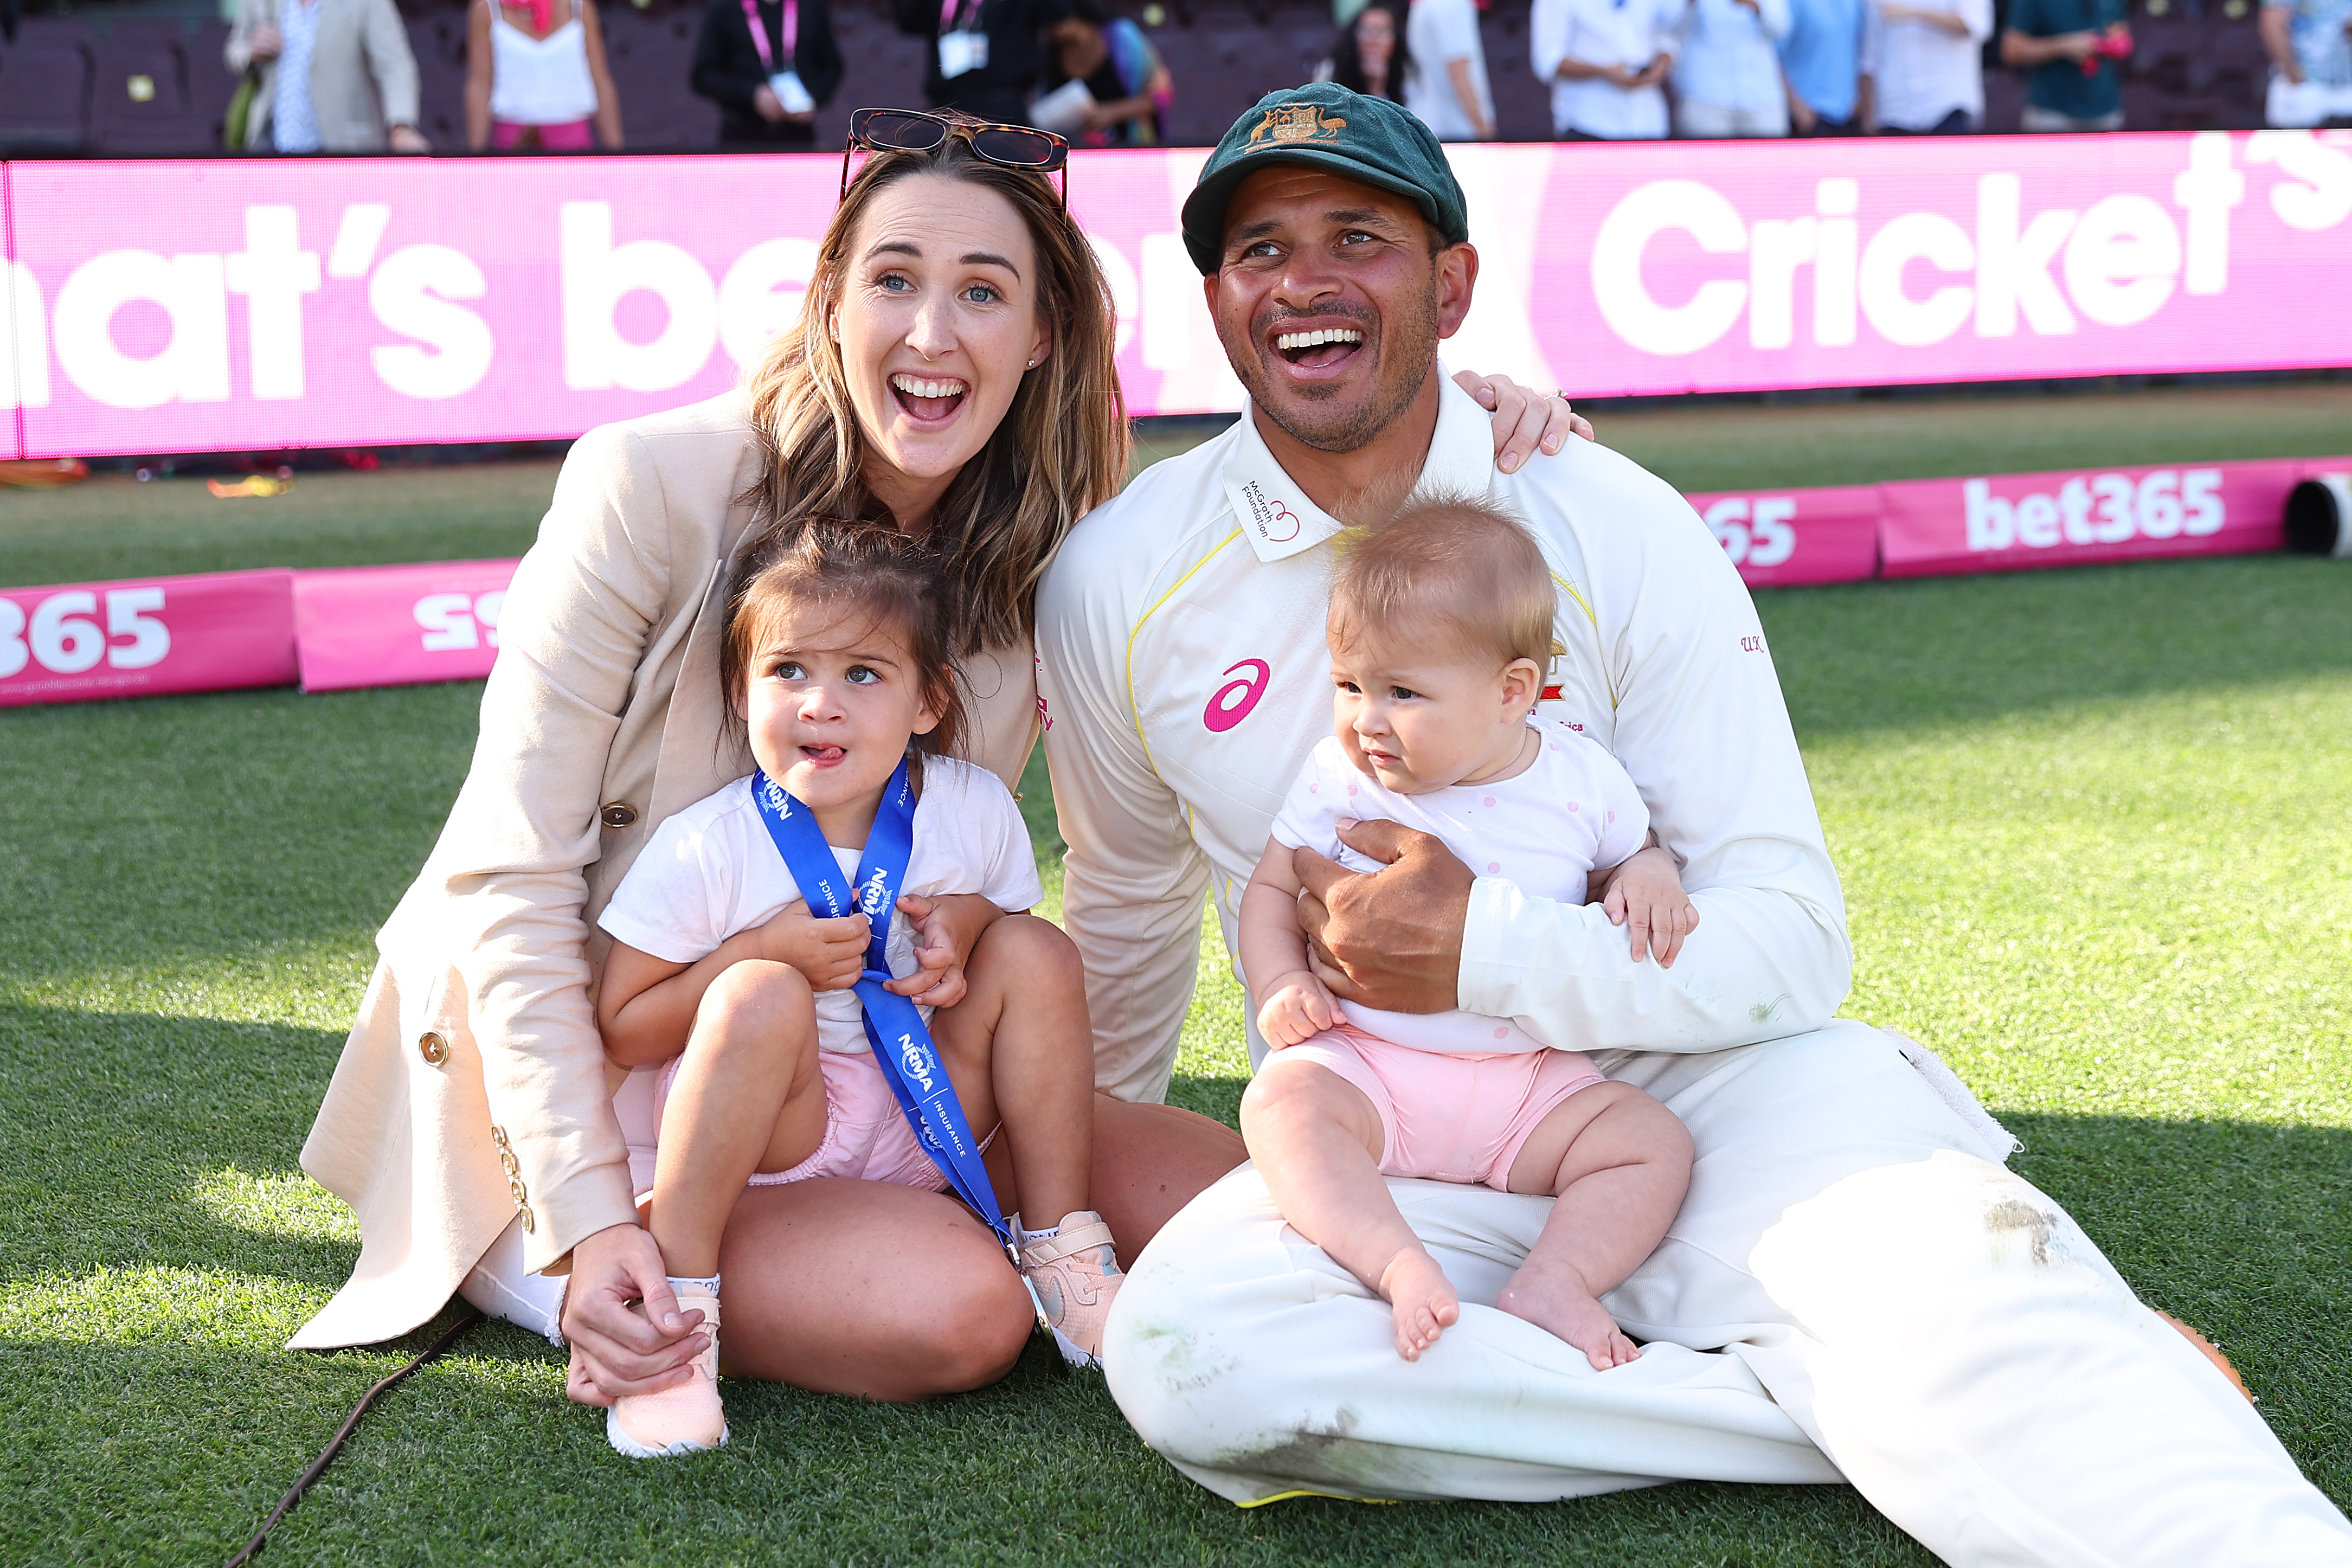 Australian cricketer Usman Khawaja and his family